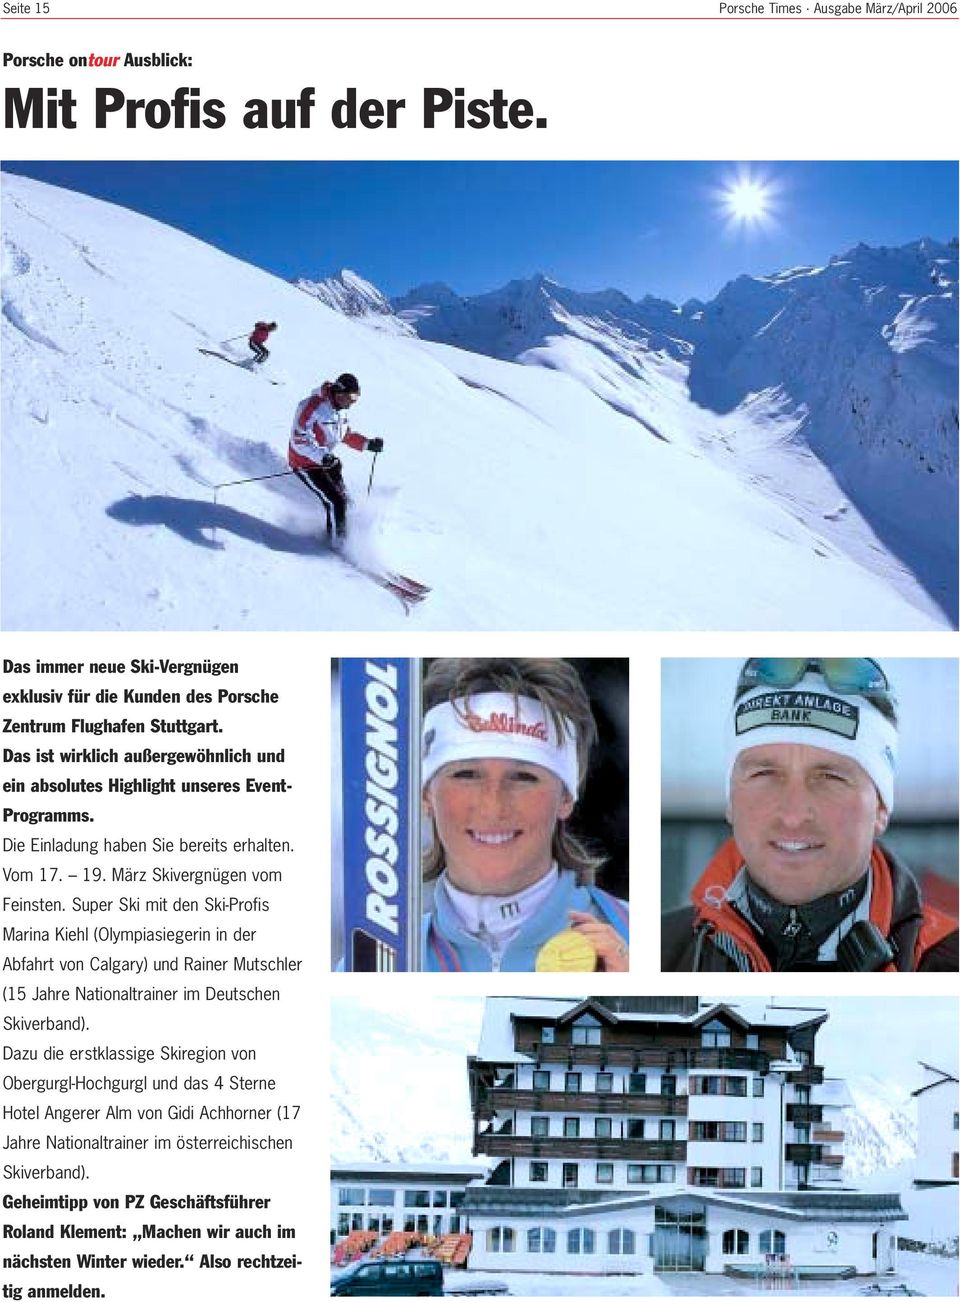 Super Ski mit den Ski-Profis Marina Kiehl (Olympiasiegerin in der Abfahrt von Calgary) und Rainer Mutschler (15 Jahre Nationaltrainer im Deutschen Skiverband).